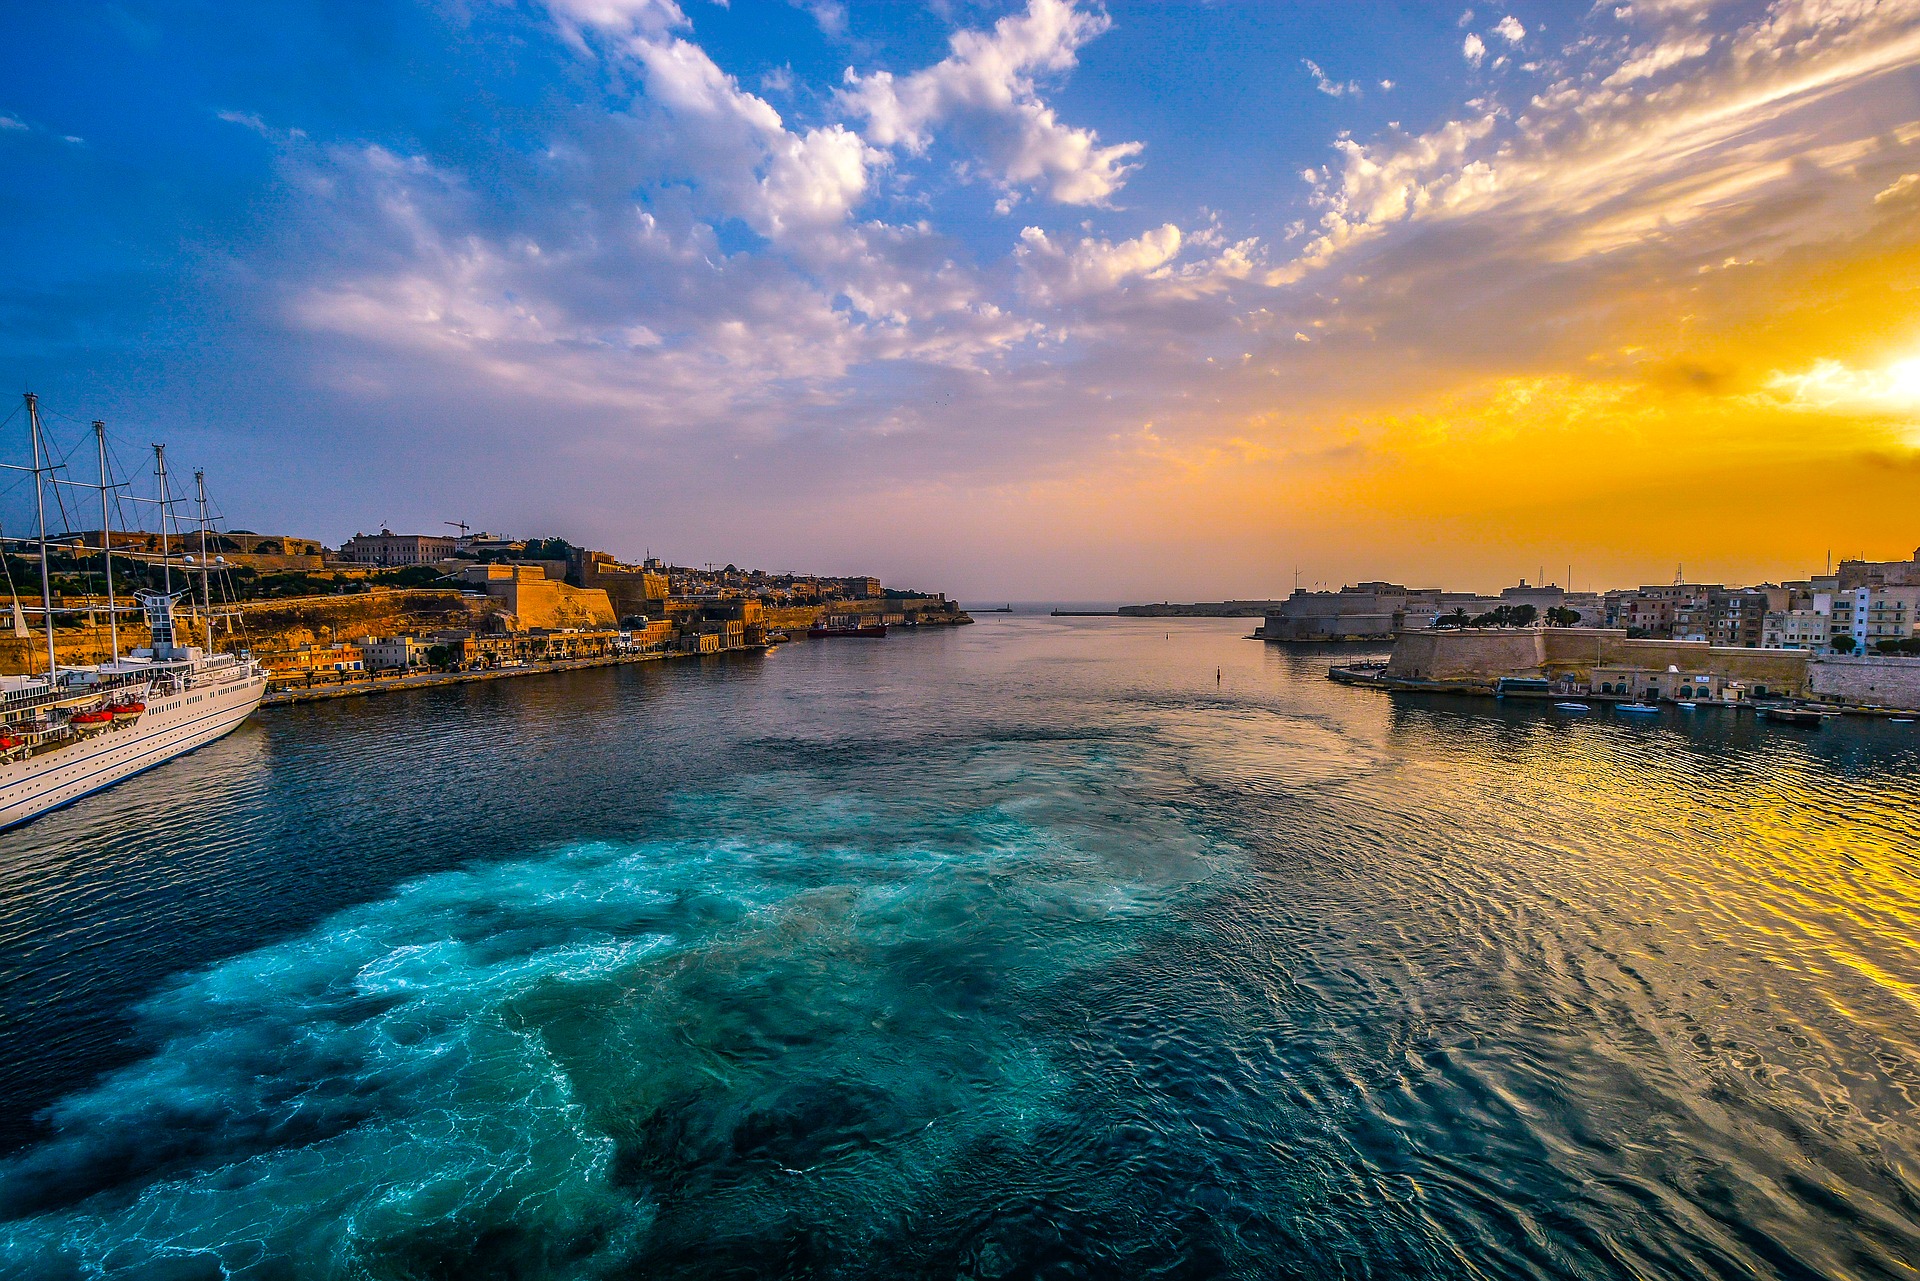 Hafen von Valetta, Malta